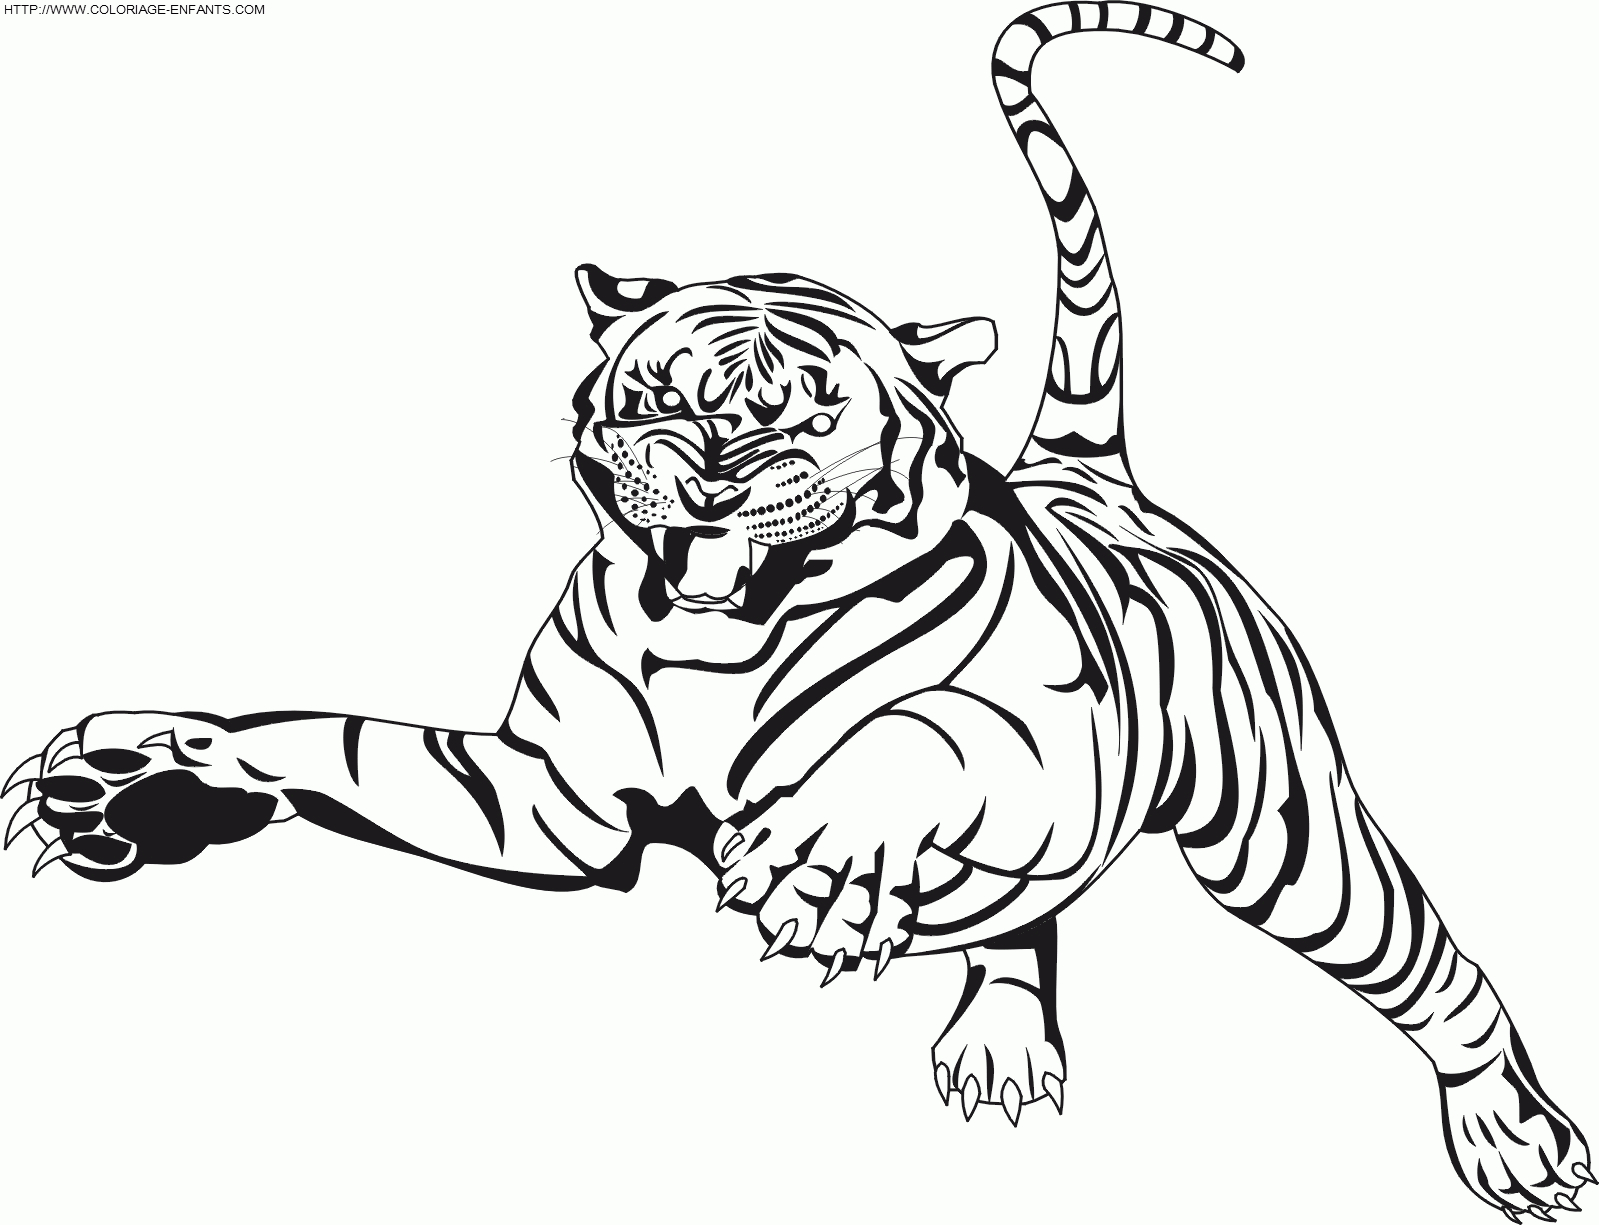 Coloriage204: Coloriage Tigre À Imprimer encequiconcerne Coloriage Bébé Tigre